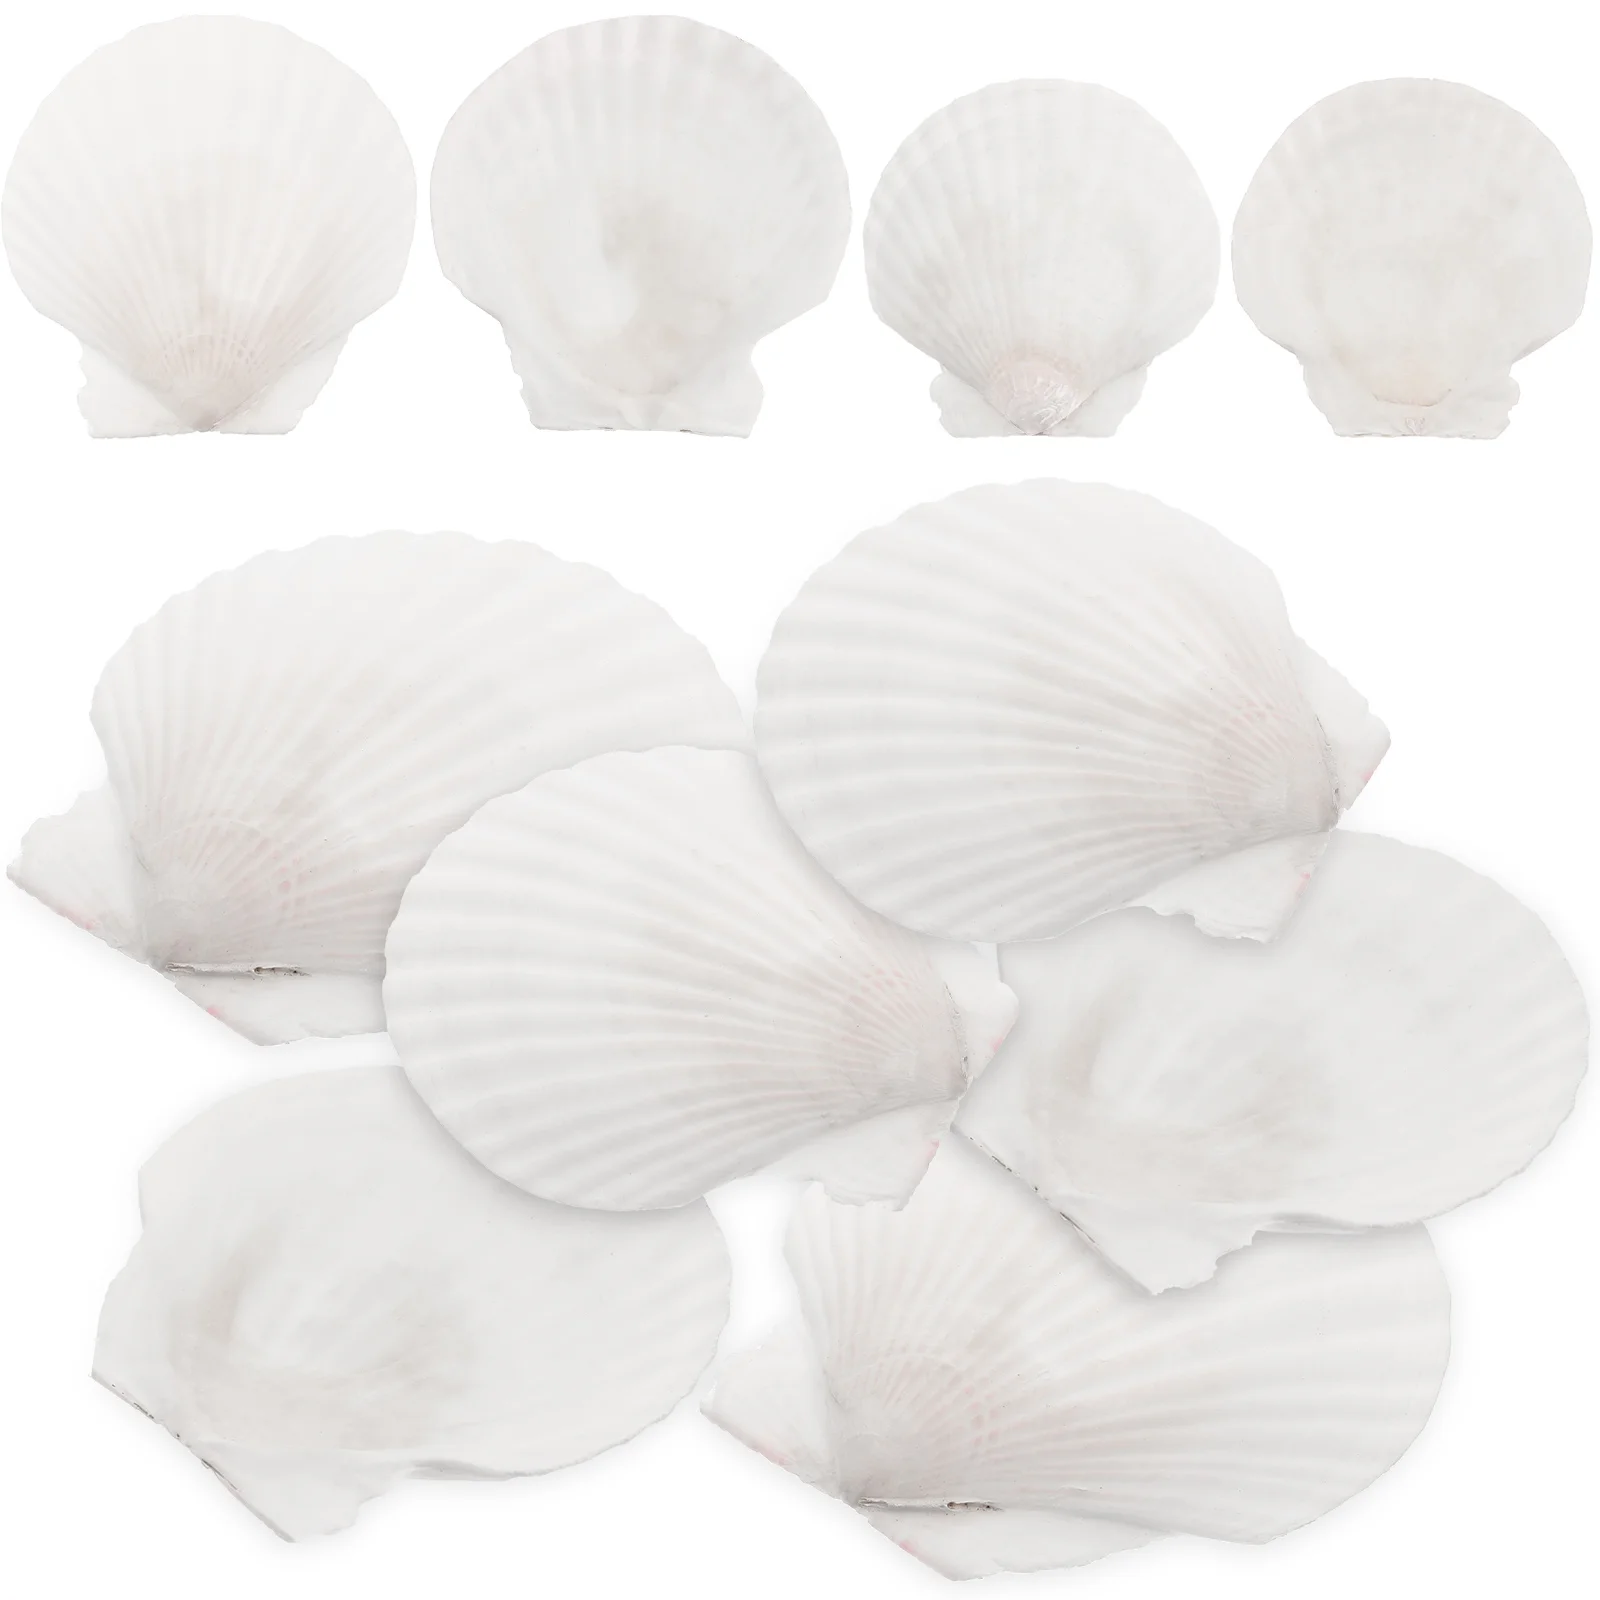 

10 Pcs Natural Shell Decoration Fish Tank Ornaments Aquarium Bulk Set Seashells Crafts Beach Seaside Conch Adorns